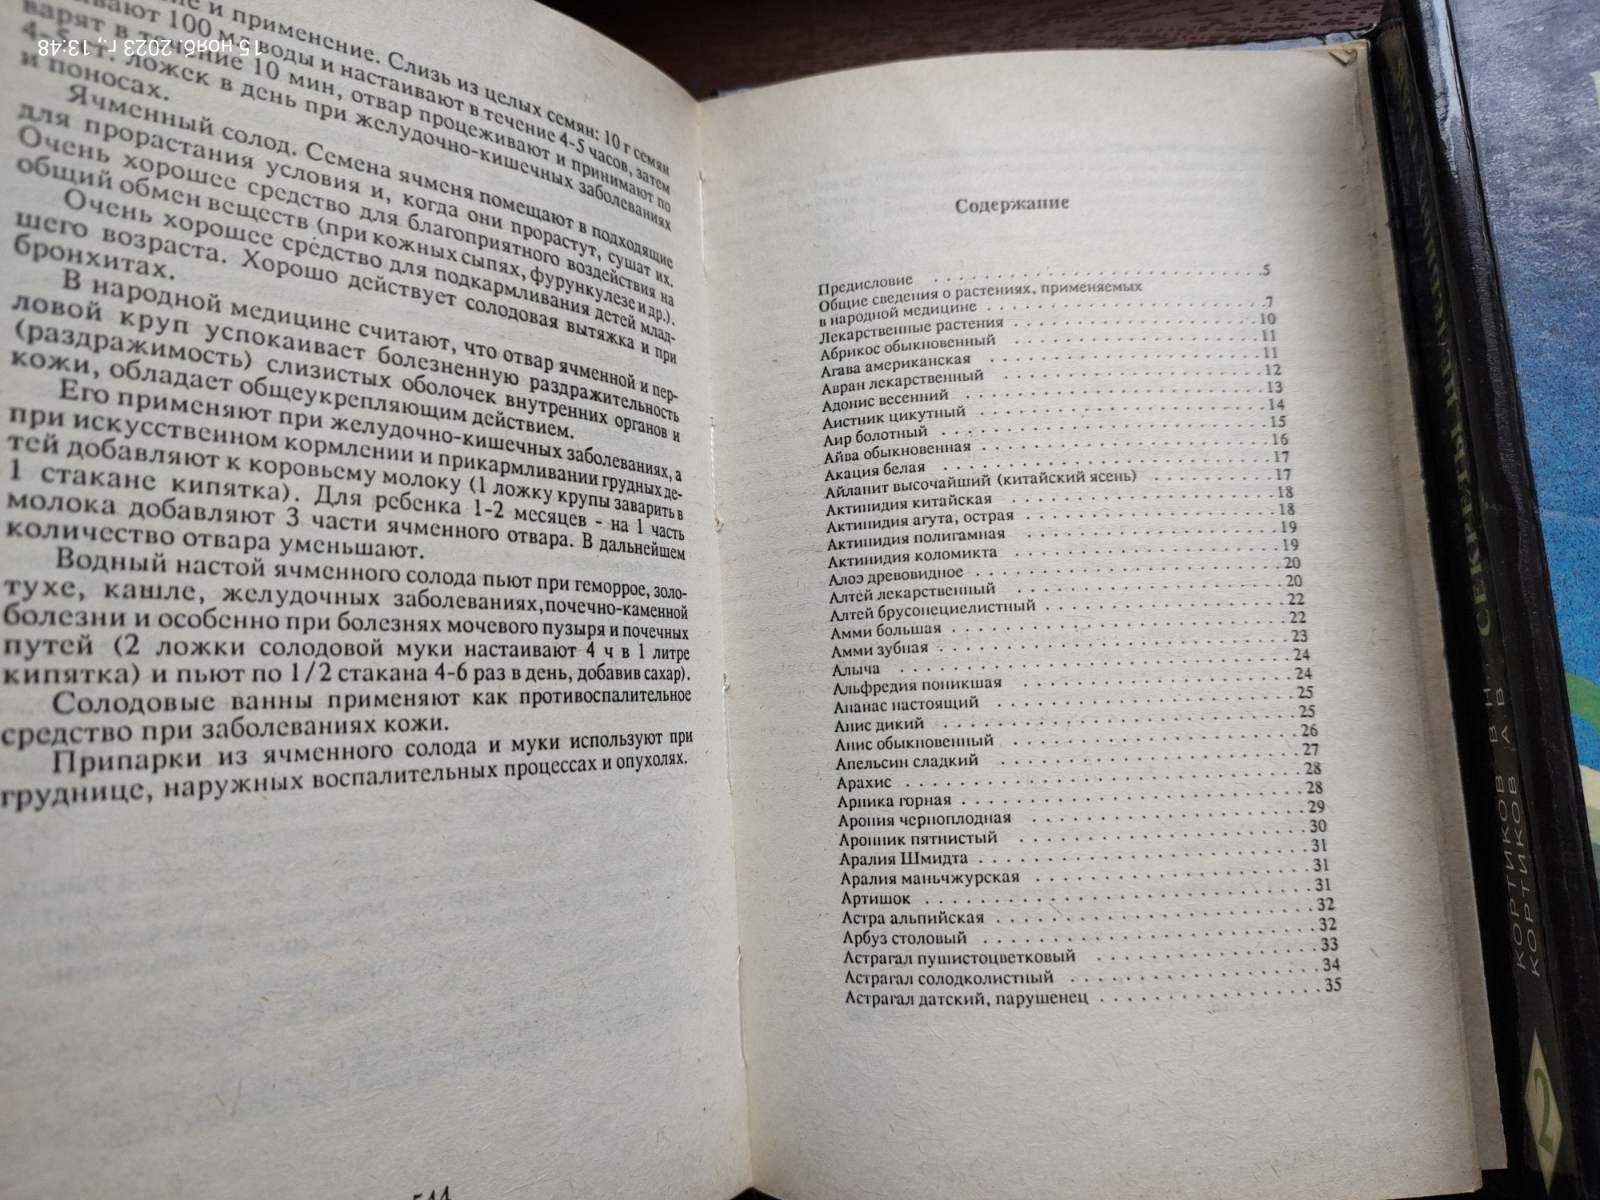 Секреты целебных трав. Энциклопедия в 2 книгах . А. и В. Кортиковы.